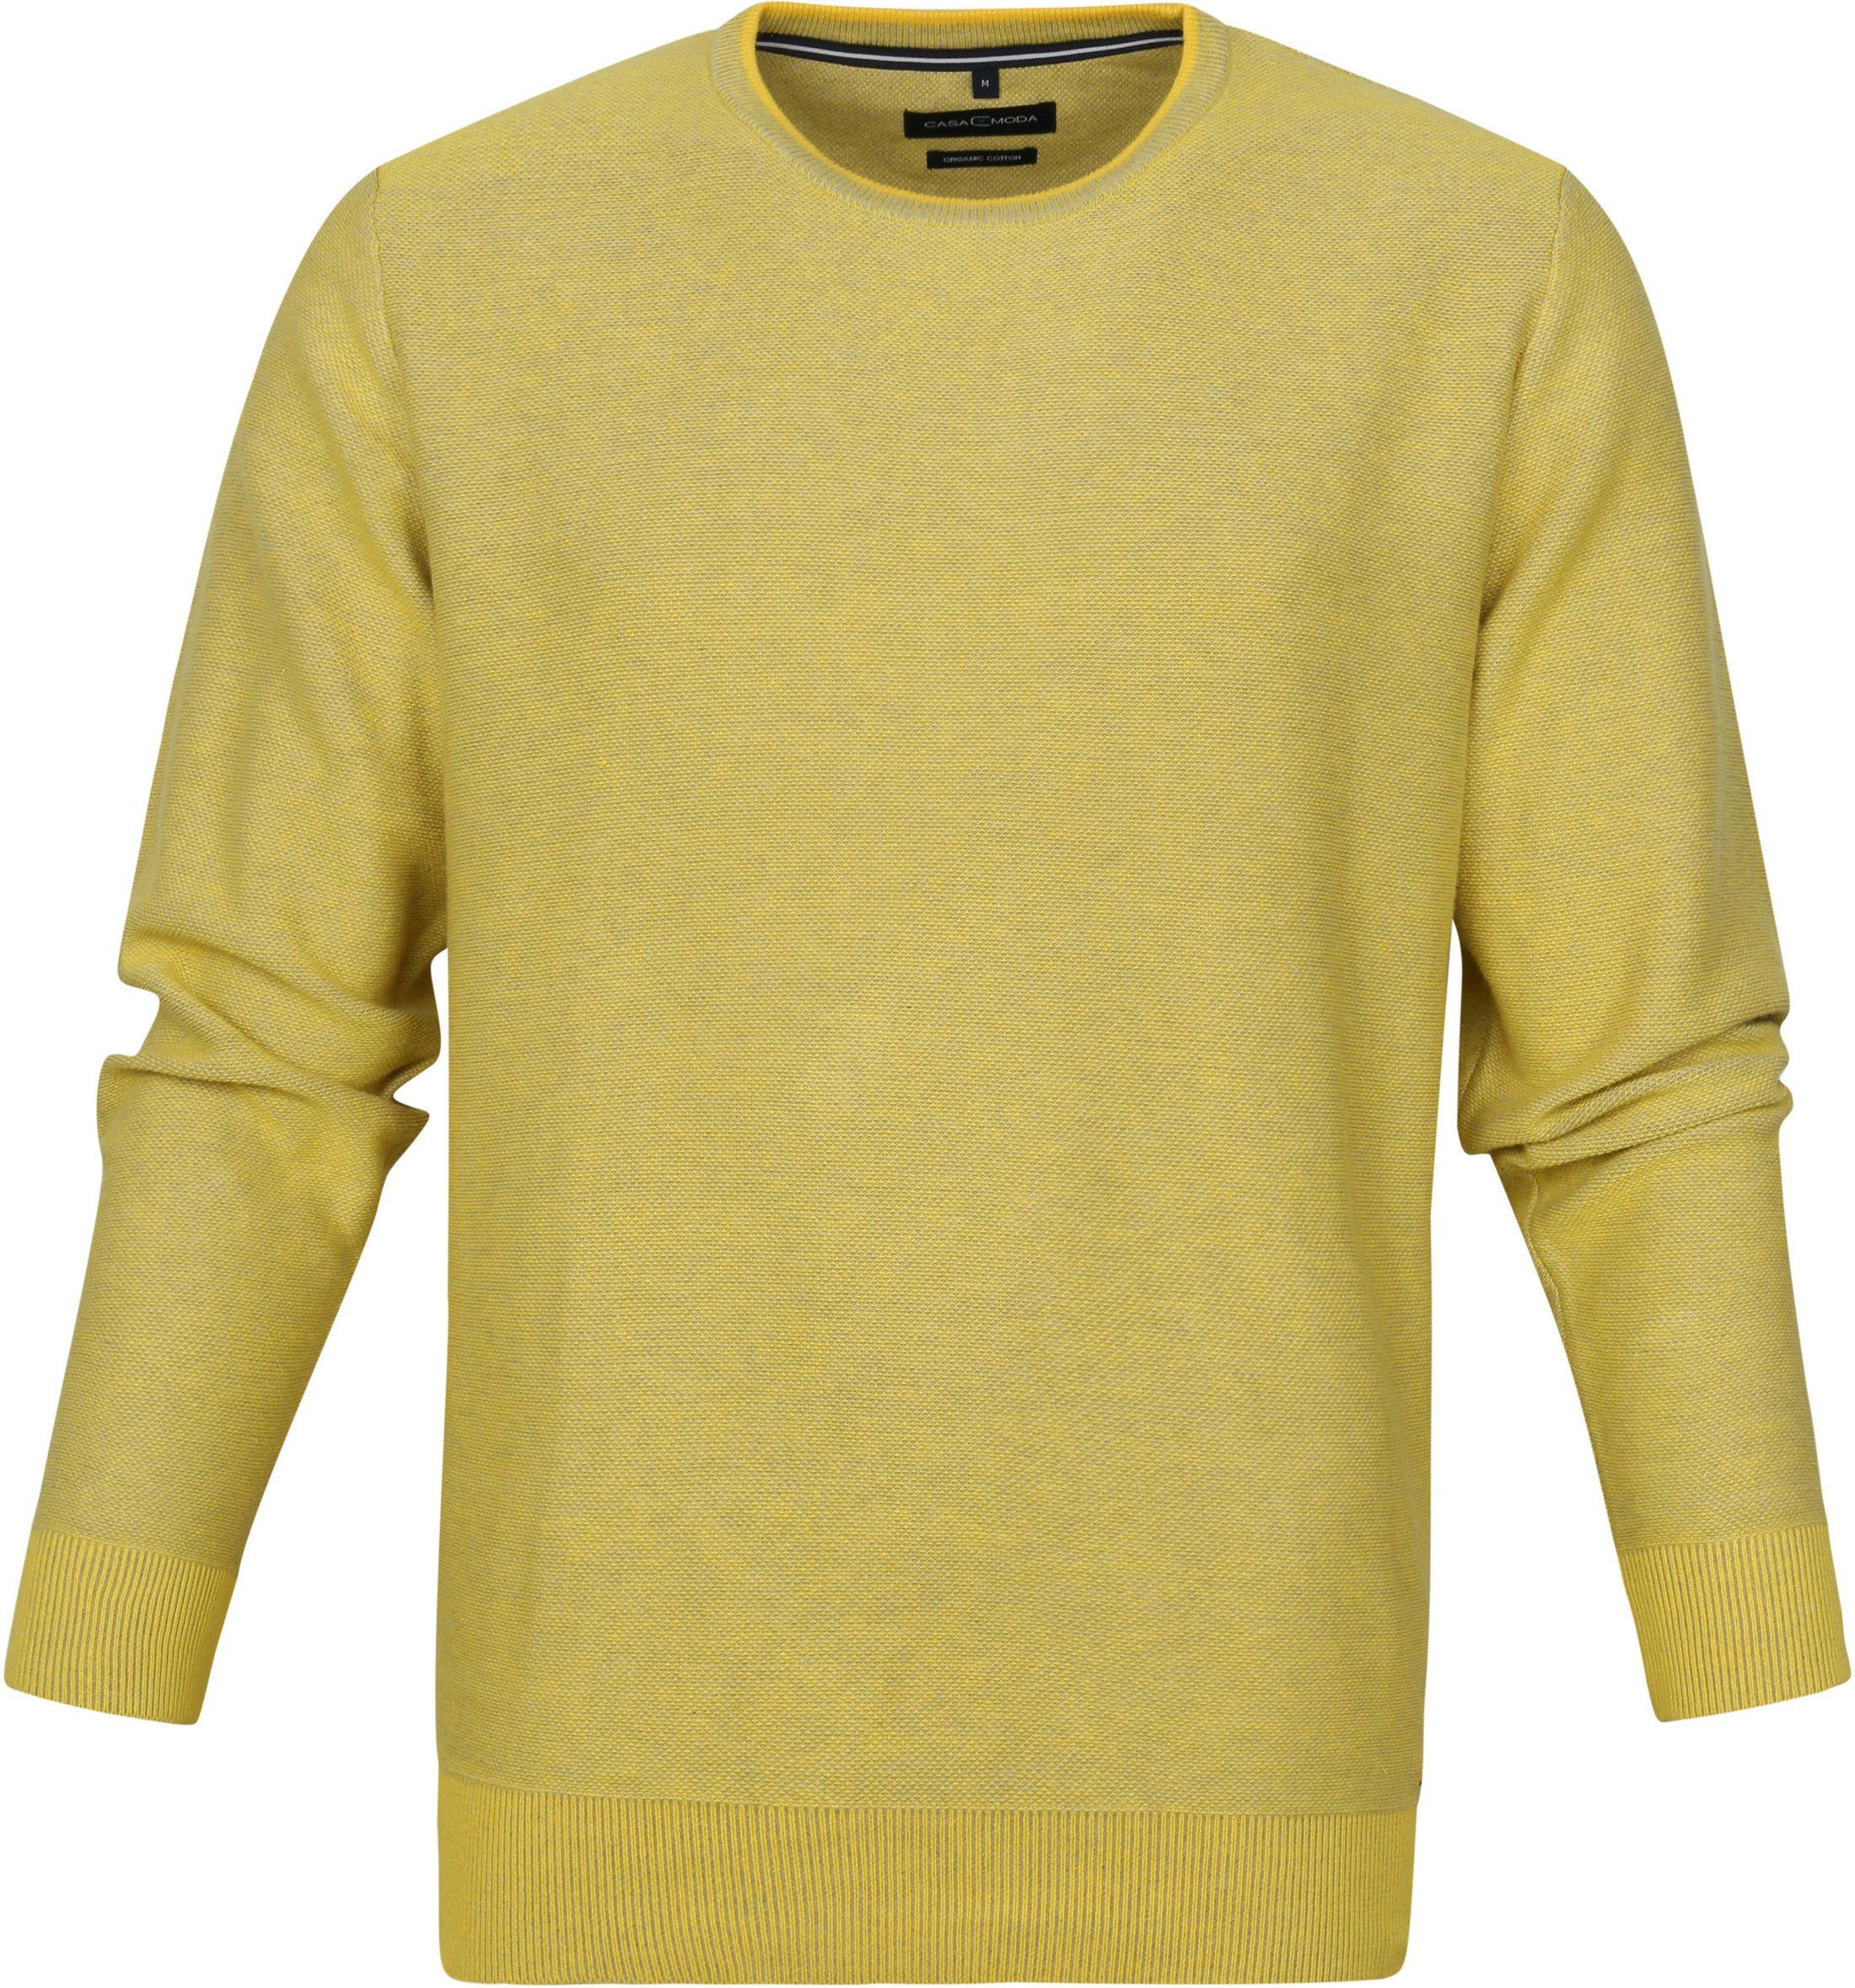 Casa Moda Pullover O-Neck Yellow size 3XL